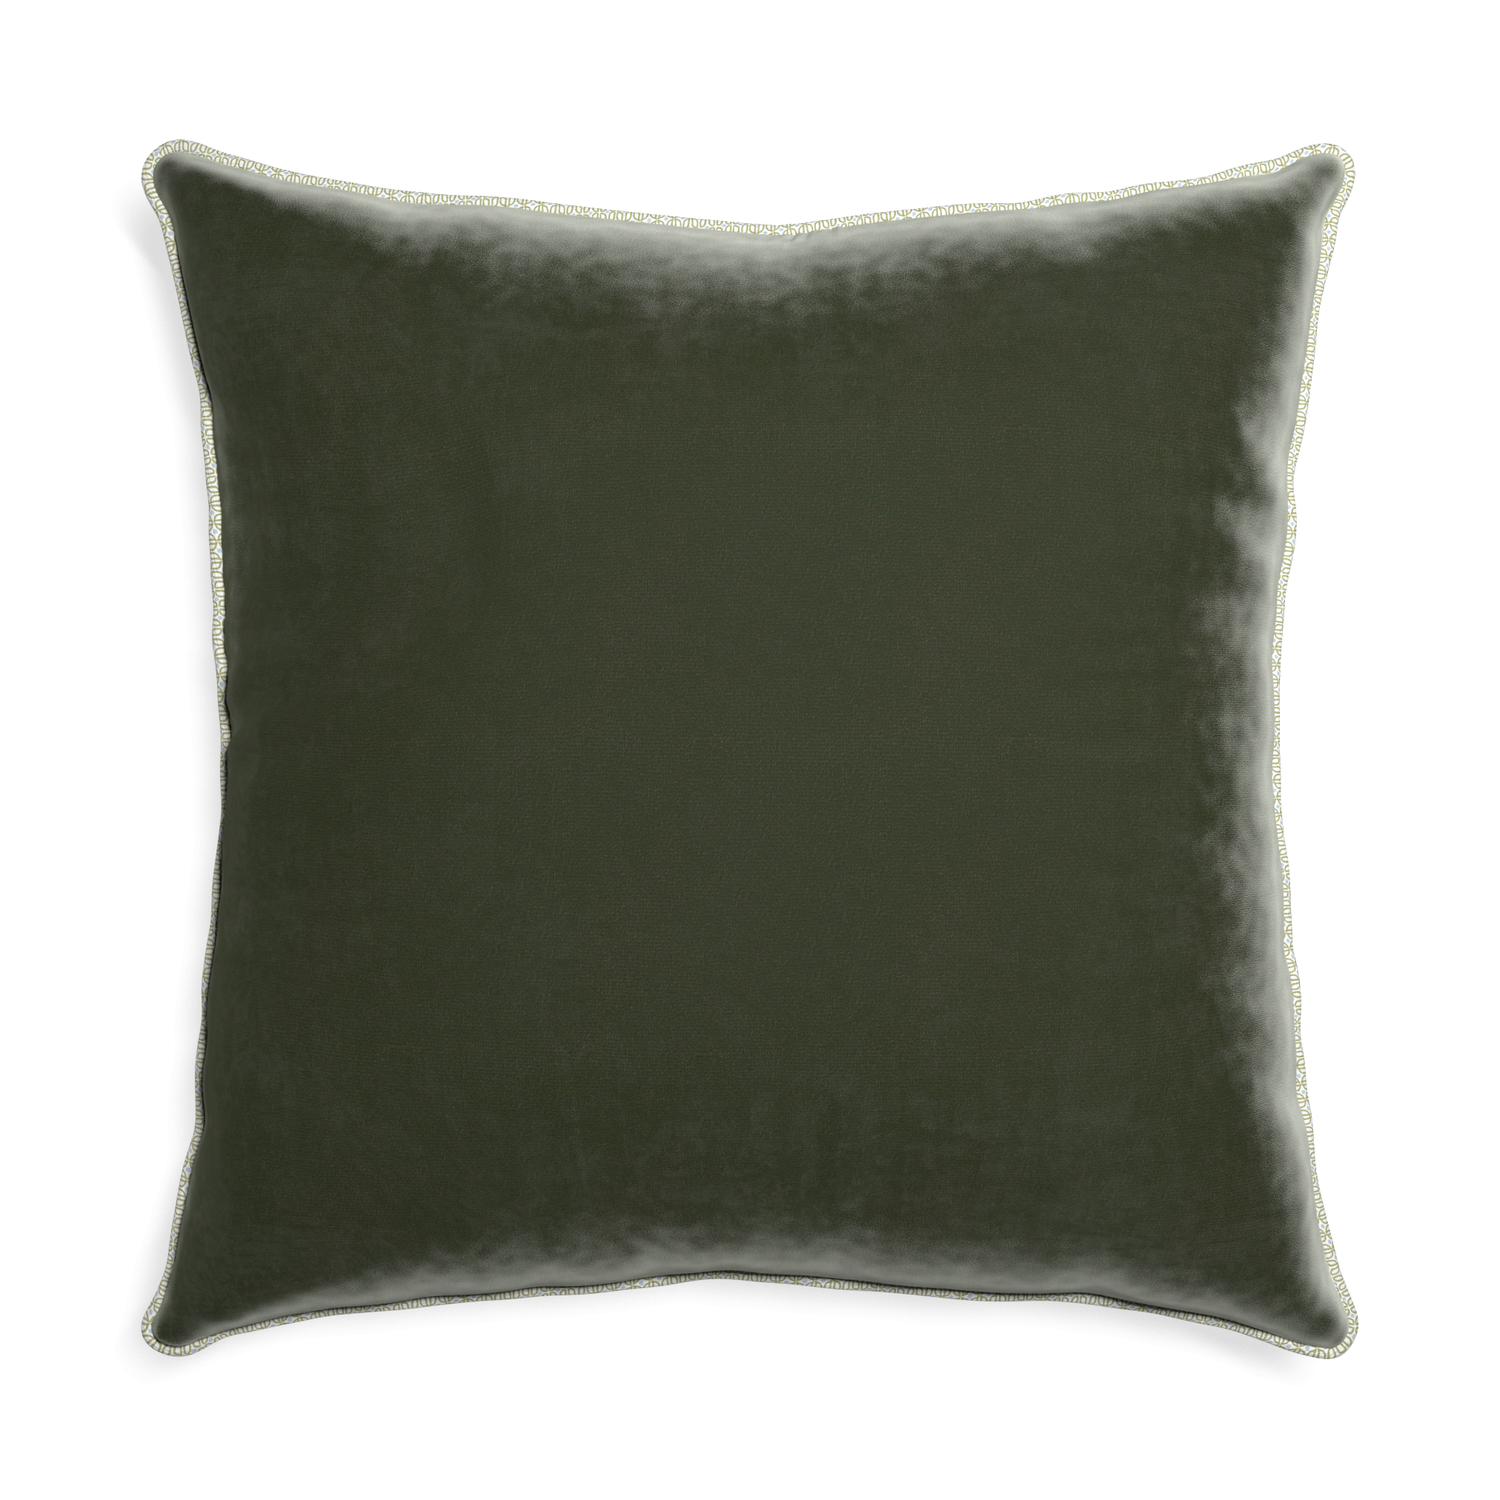 Euro-sham fern velvet custom pillow with l piping on white background